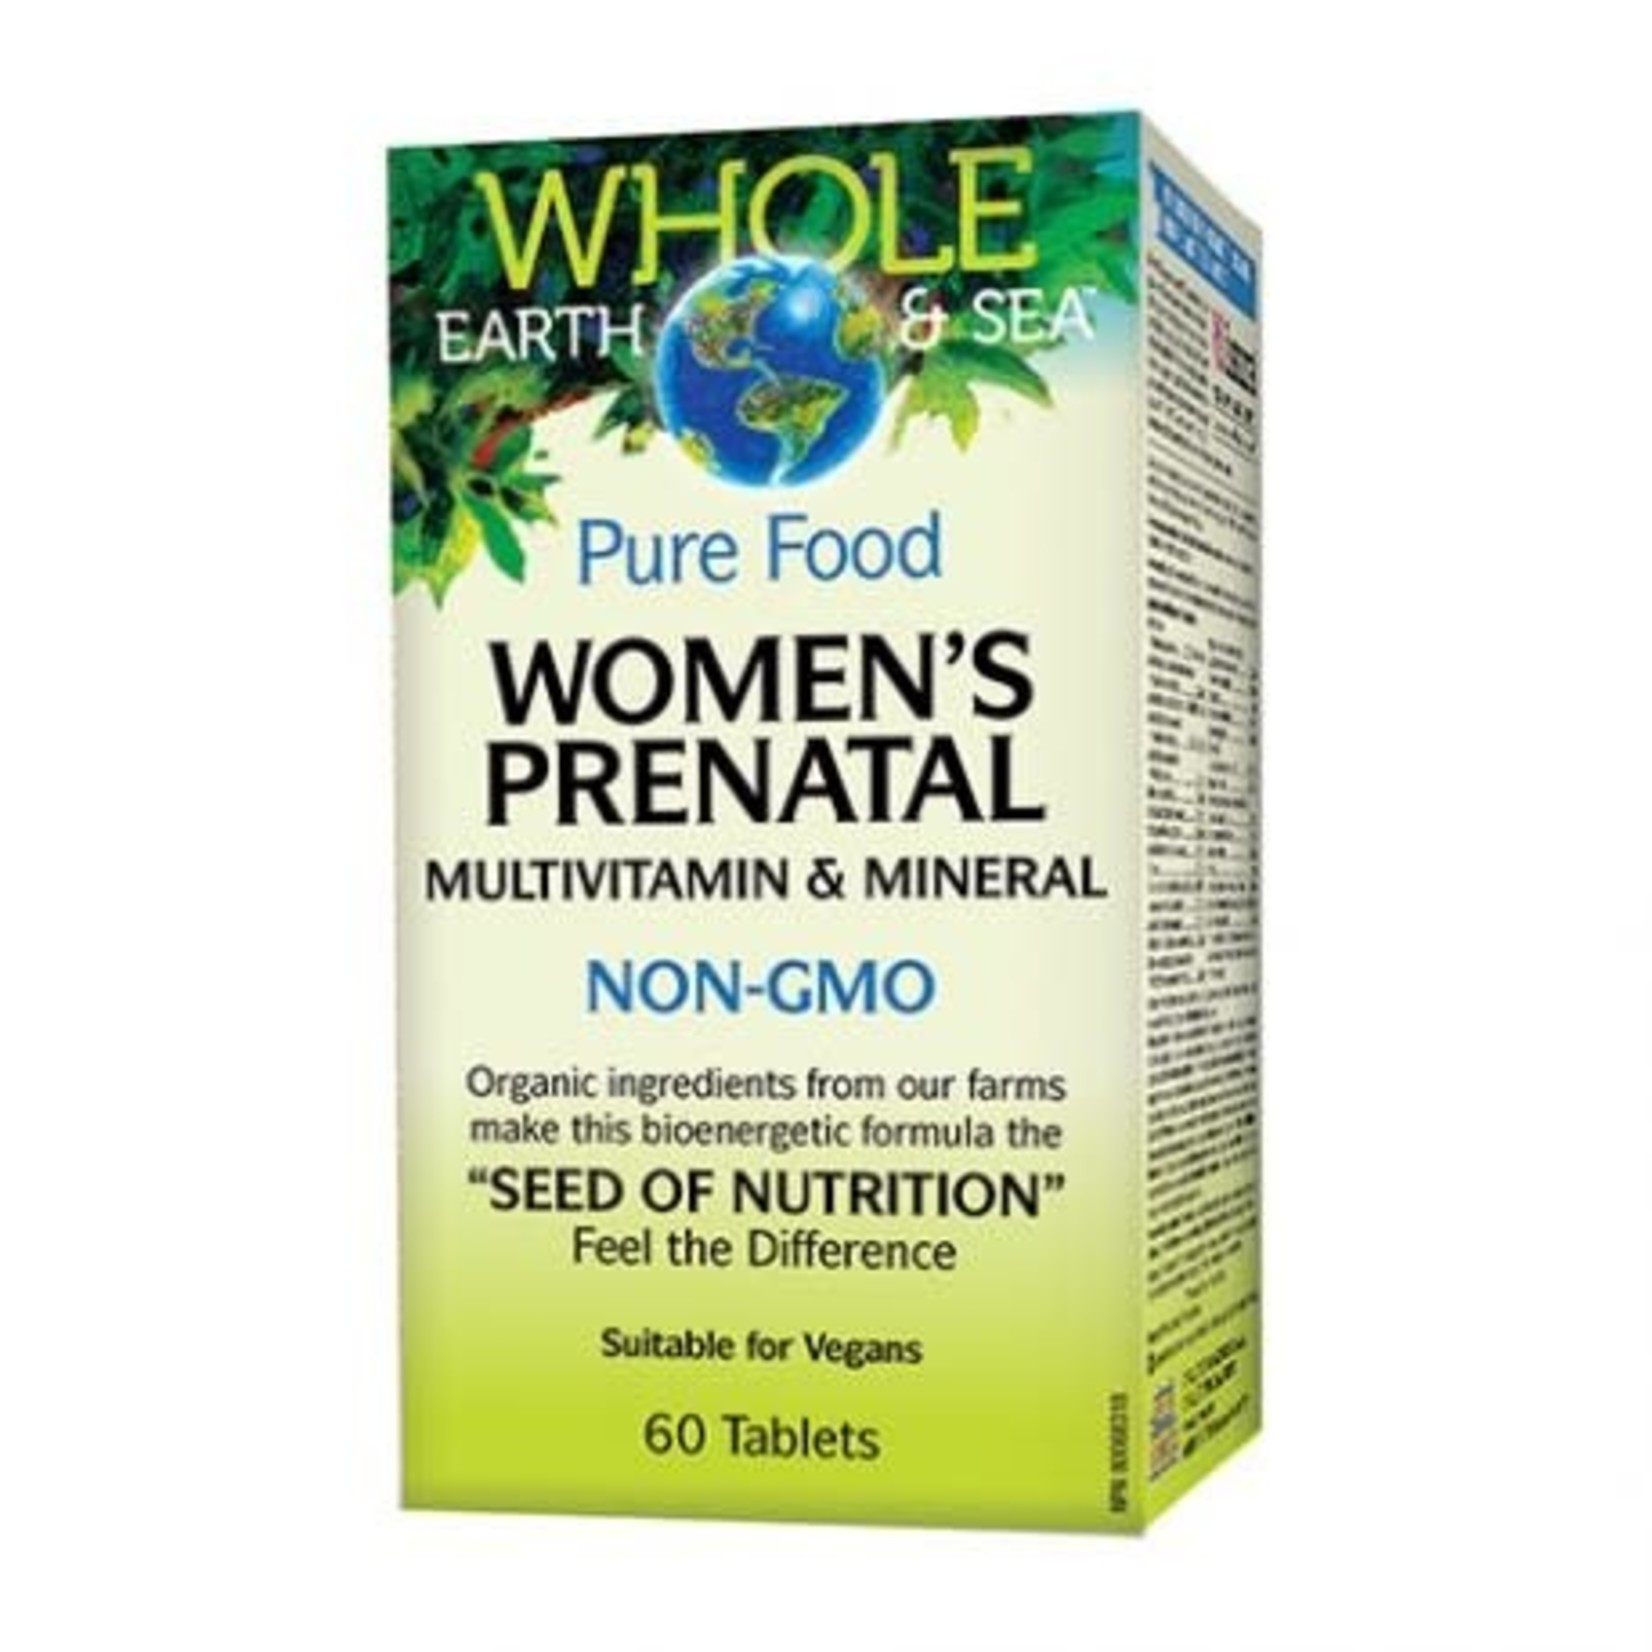 WHOLE EARTH & SEA WHOLE EARTH & SEA WOMEN'S PRENATAL MULTIVITAMIN & MINERAL 60 TABS